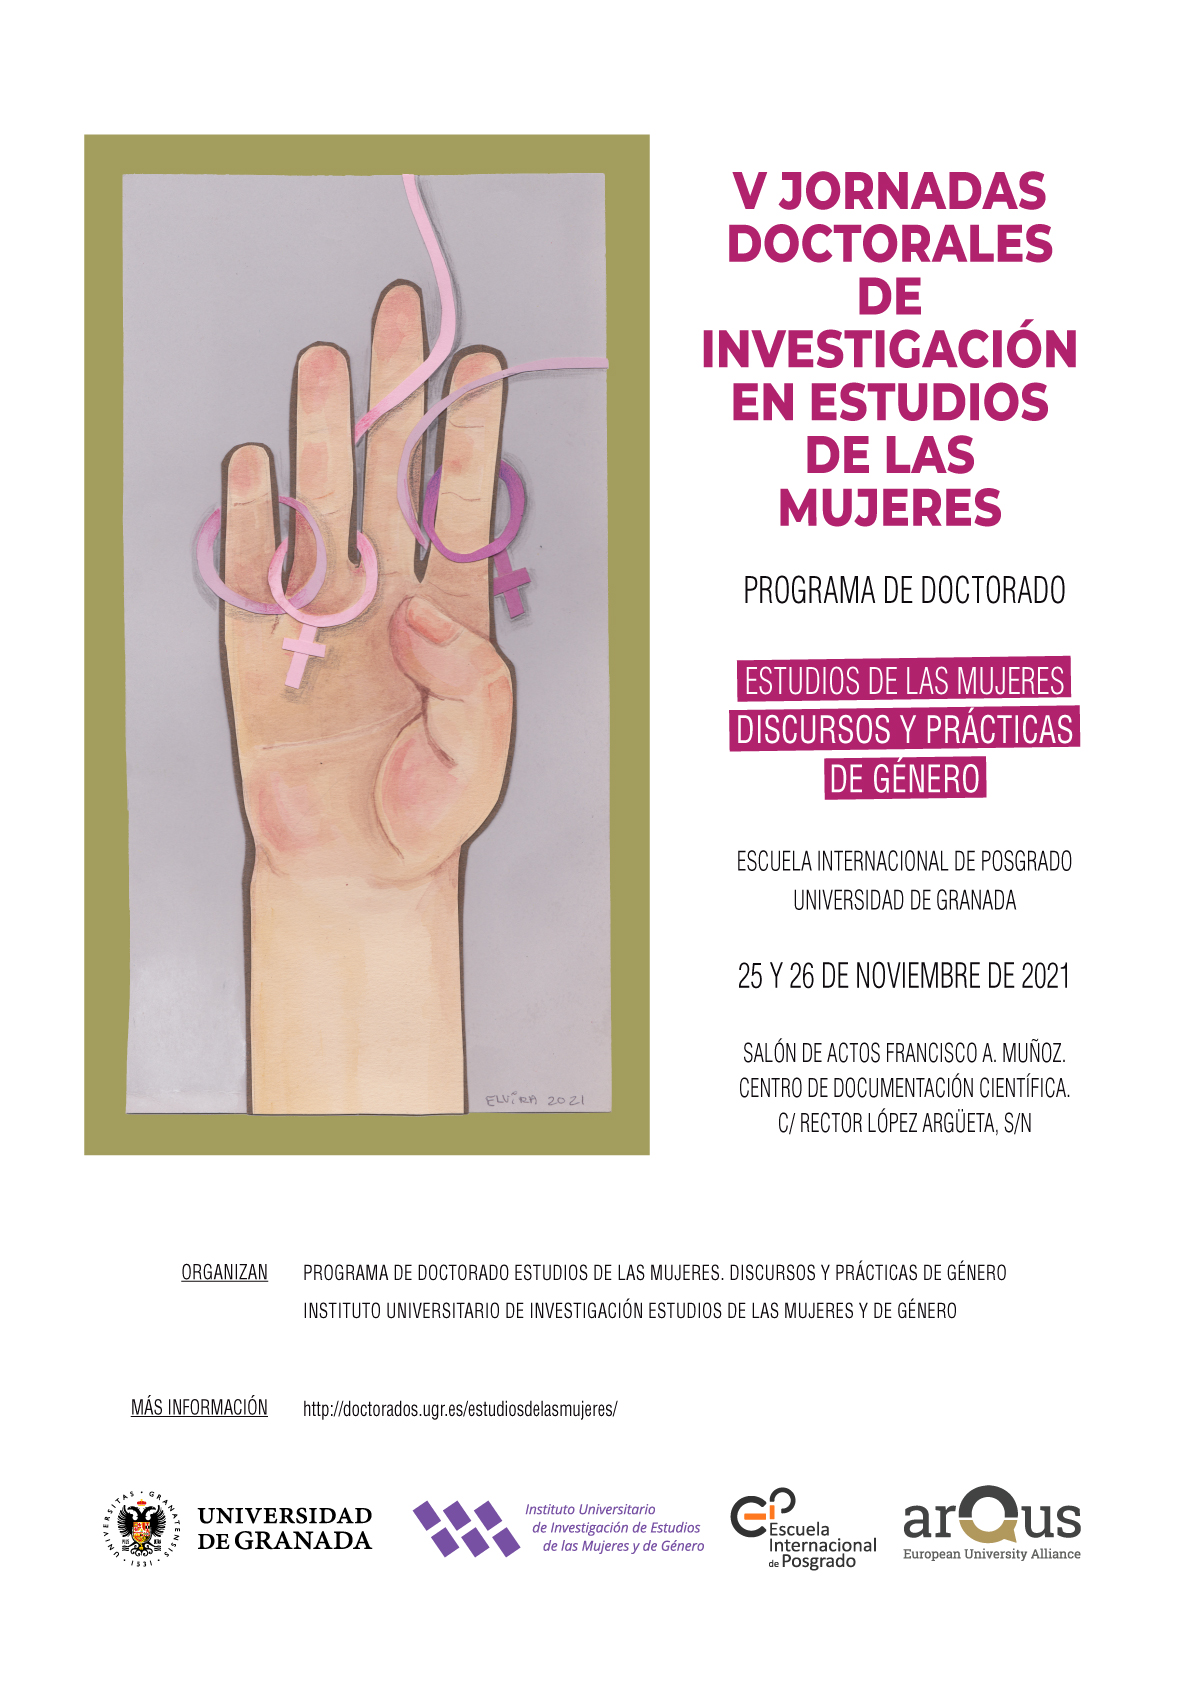 Las V Jornadas Doctorales en Estudios de la Mujeres se celebran en la UGR los días 25 y 26 de noviembre